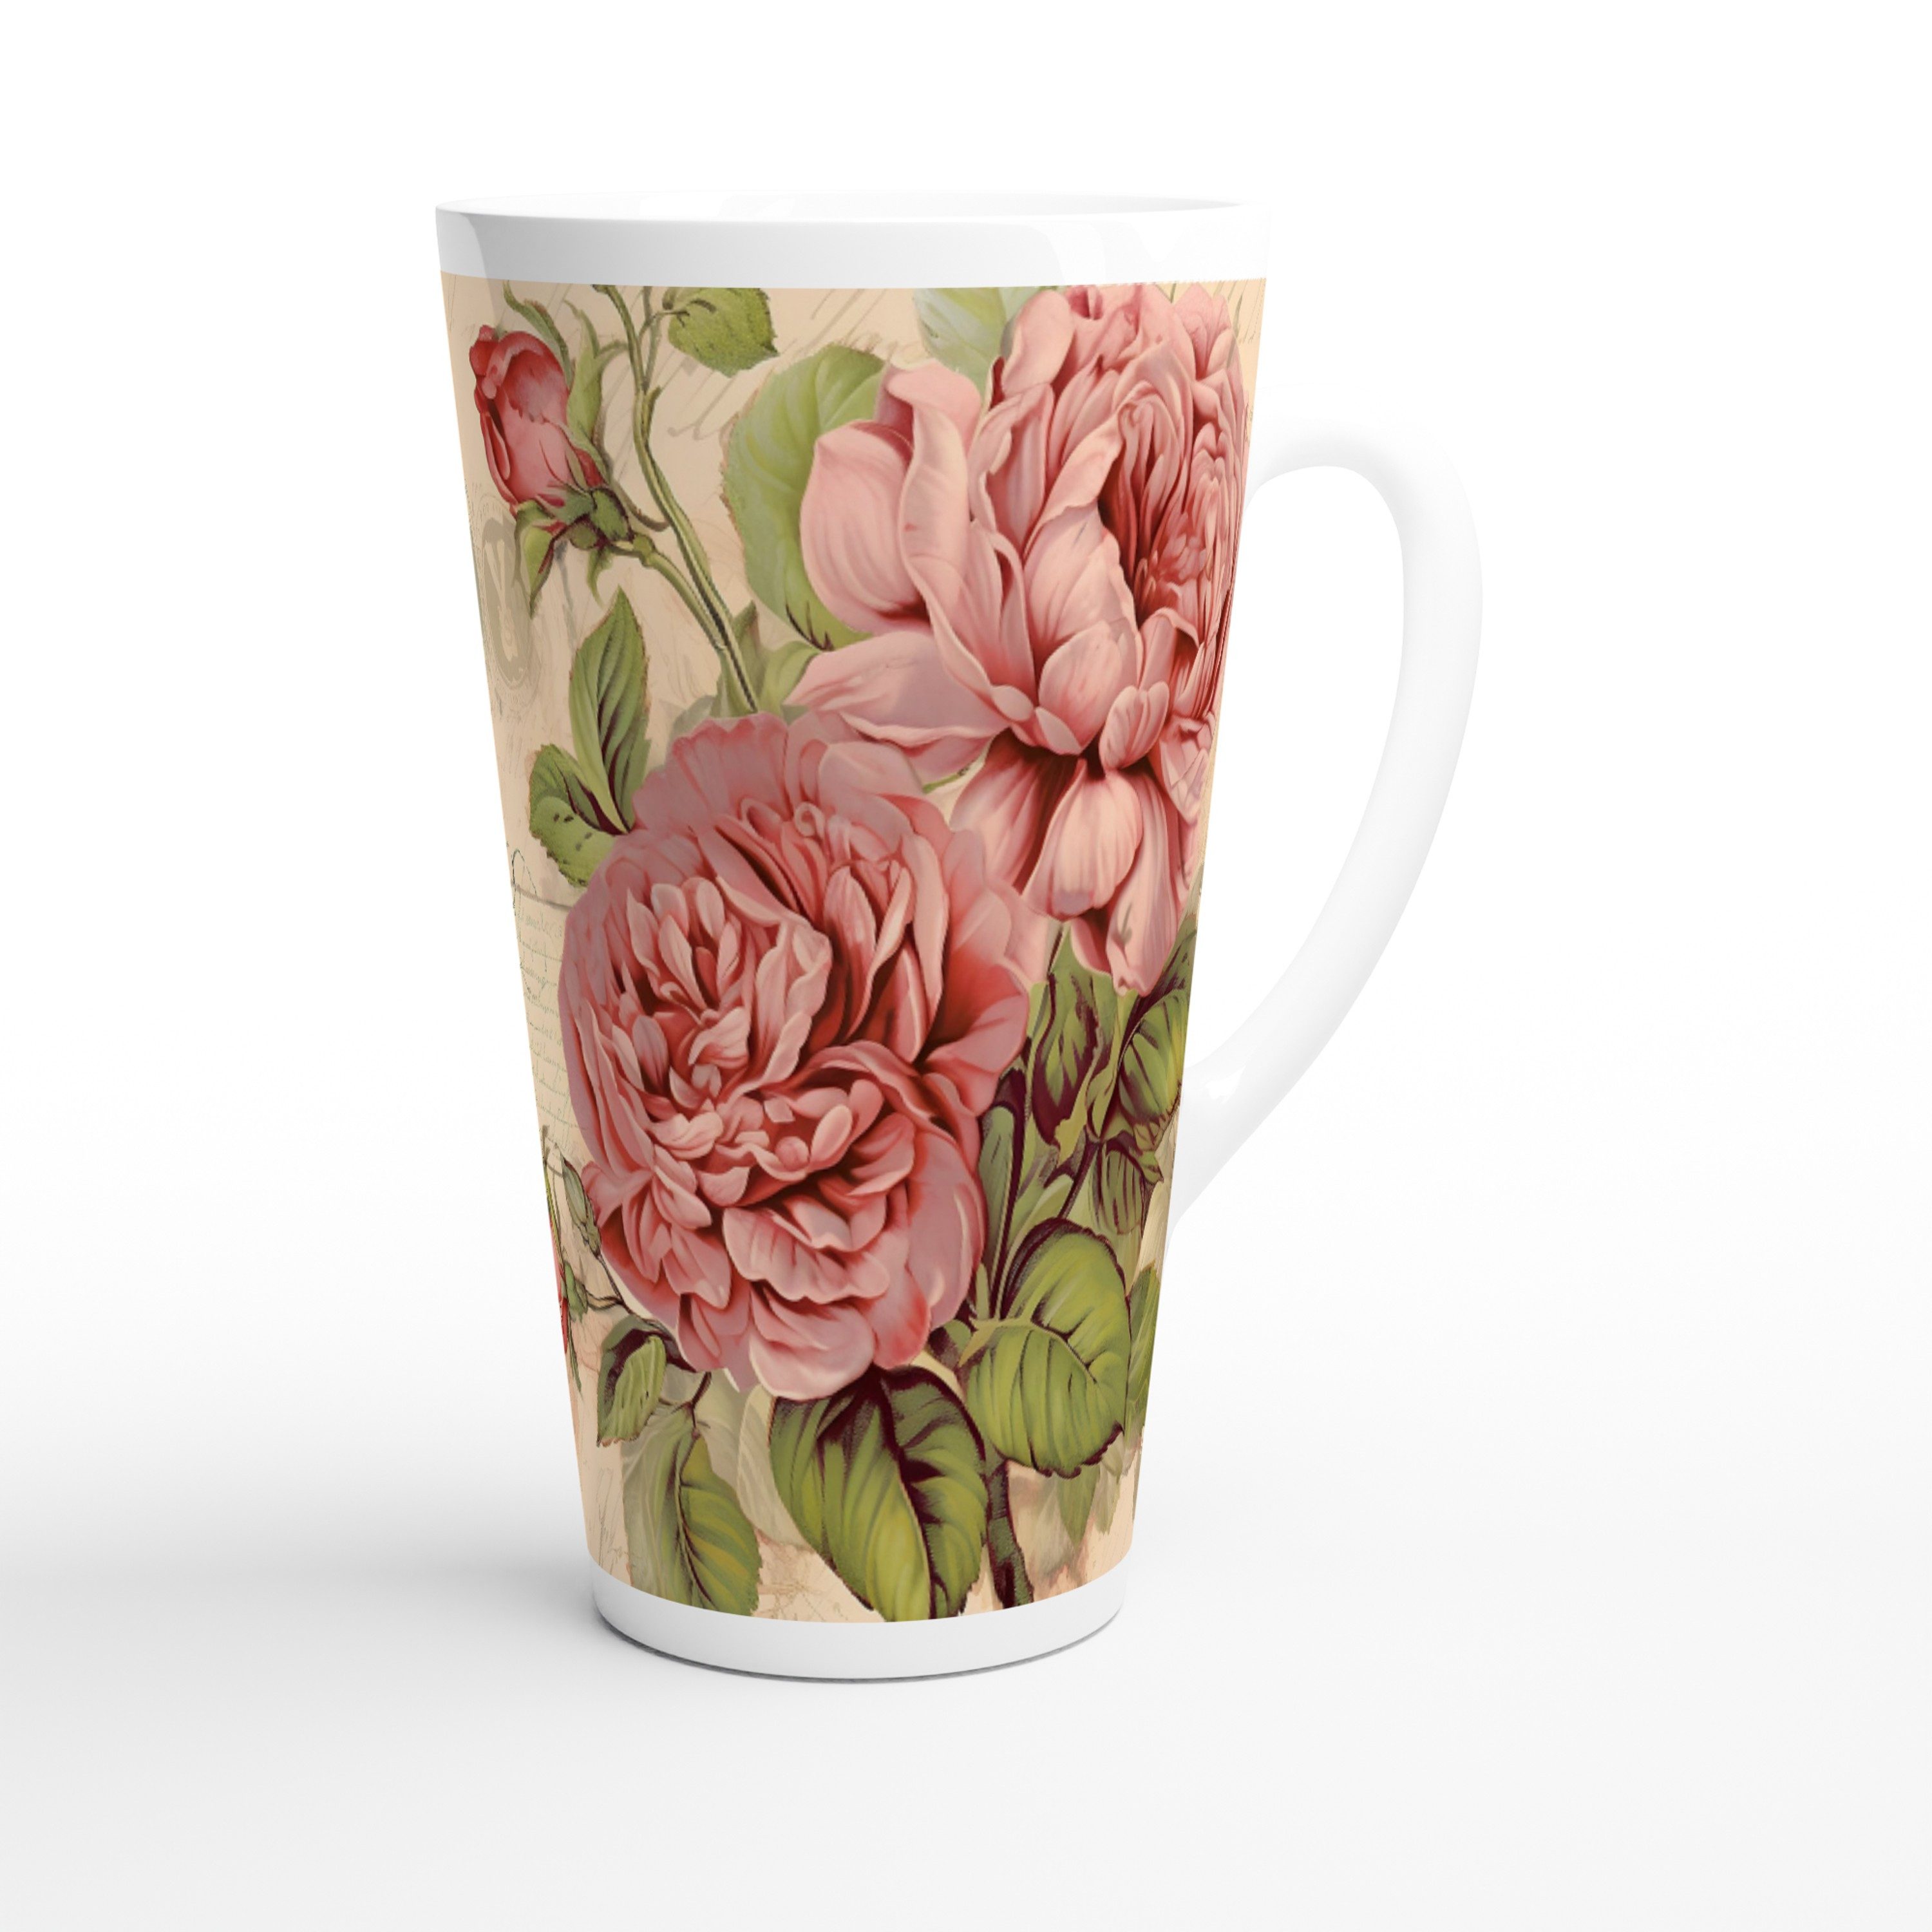 Alltagszauber Latte-Macchiato-Tasse - Jumbo-Becher VINTAGE ROSE, Keramik, extra groß, für 500ml Inhalt